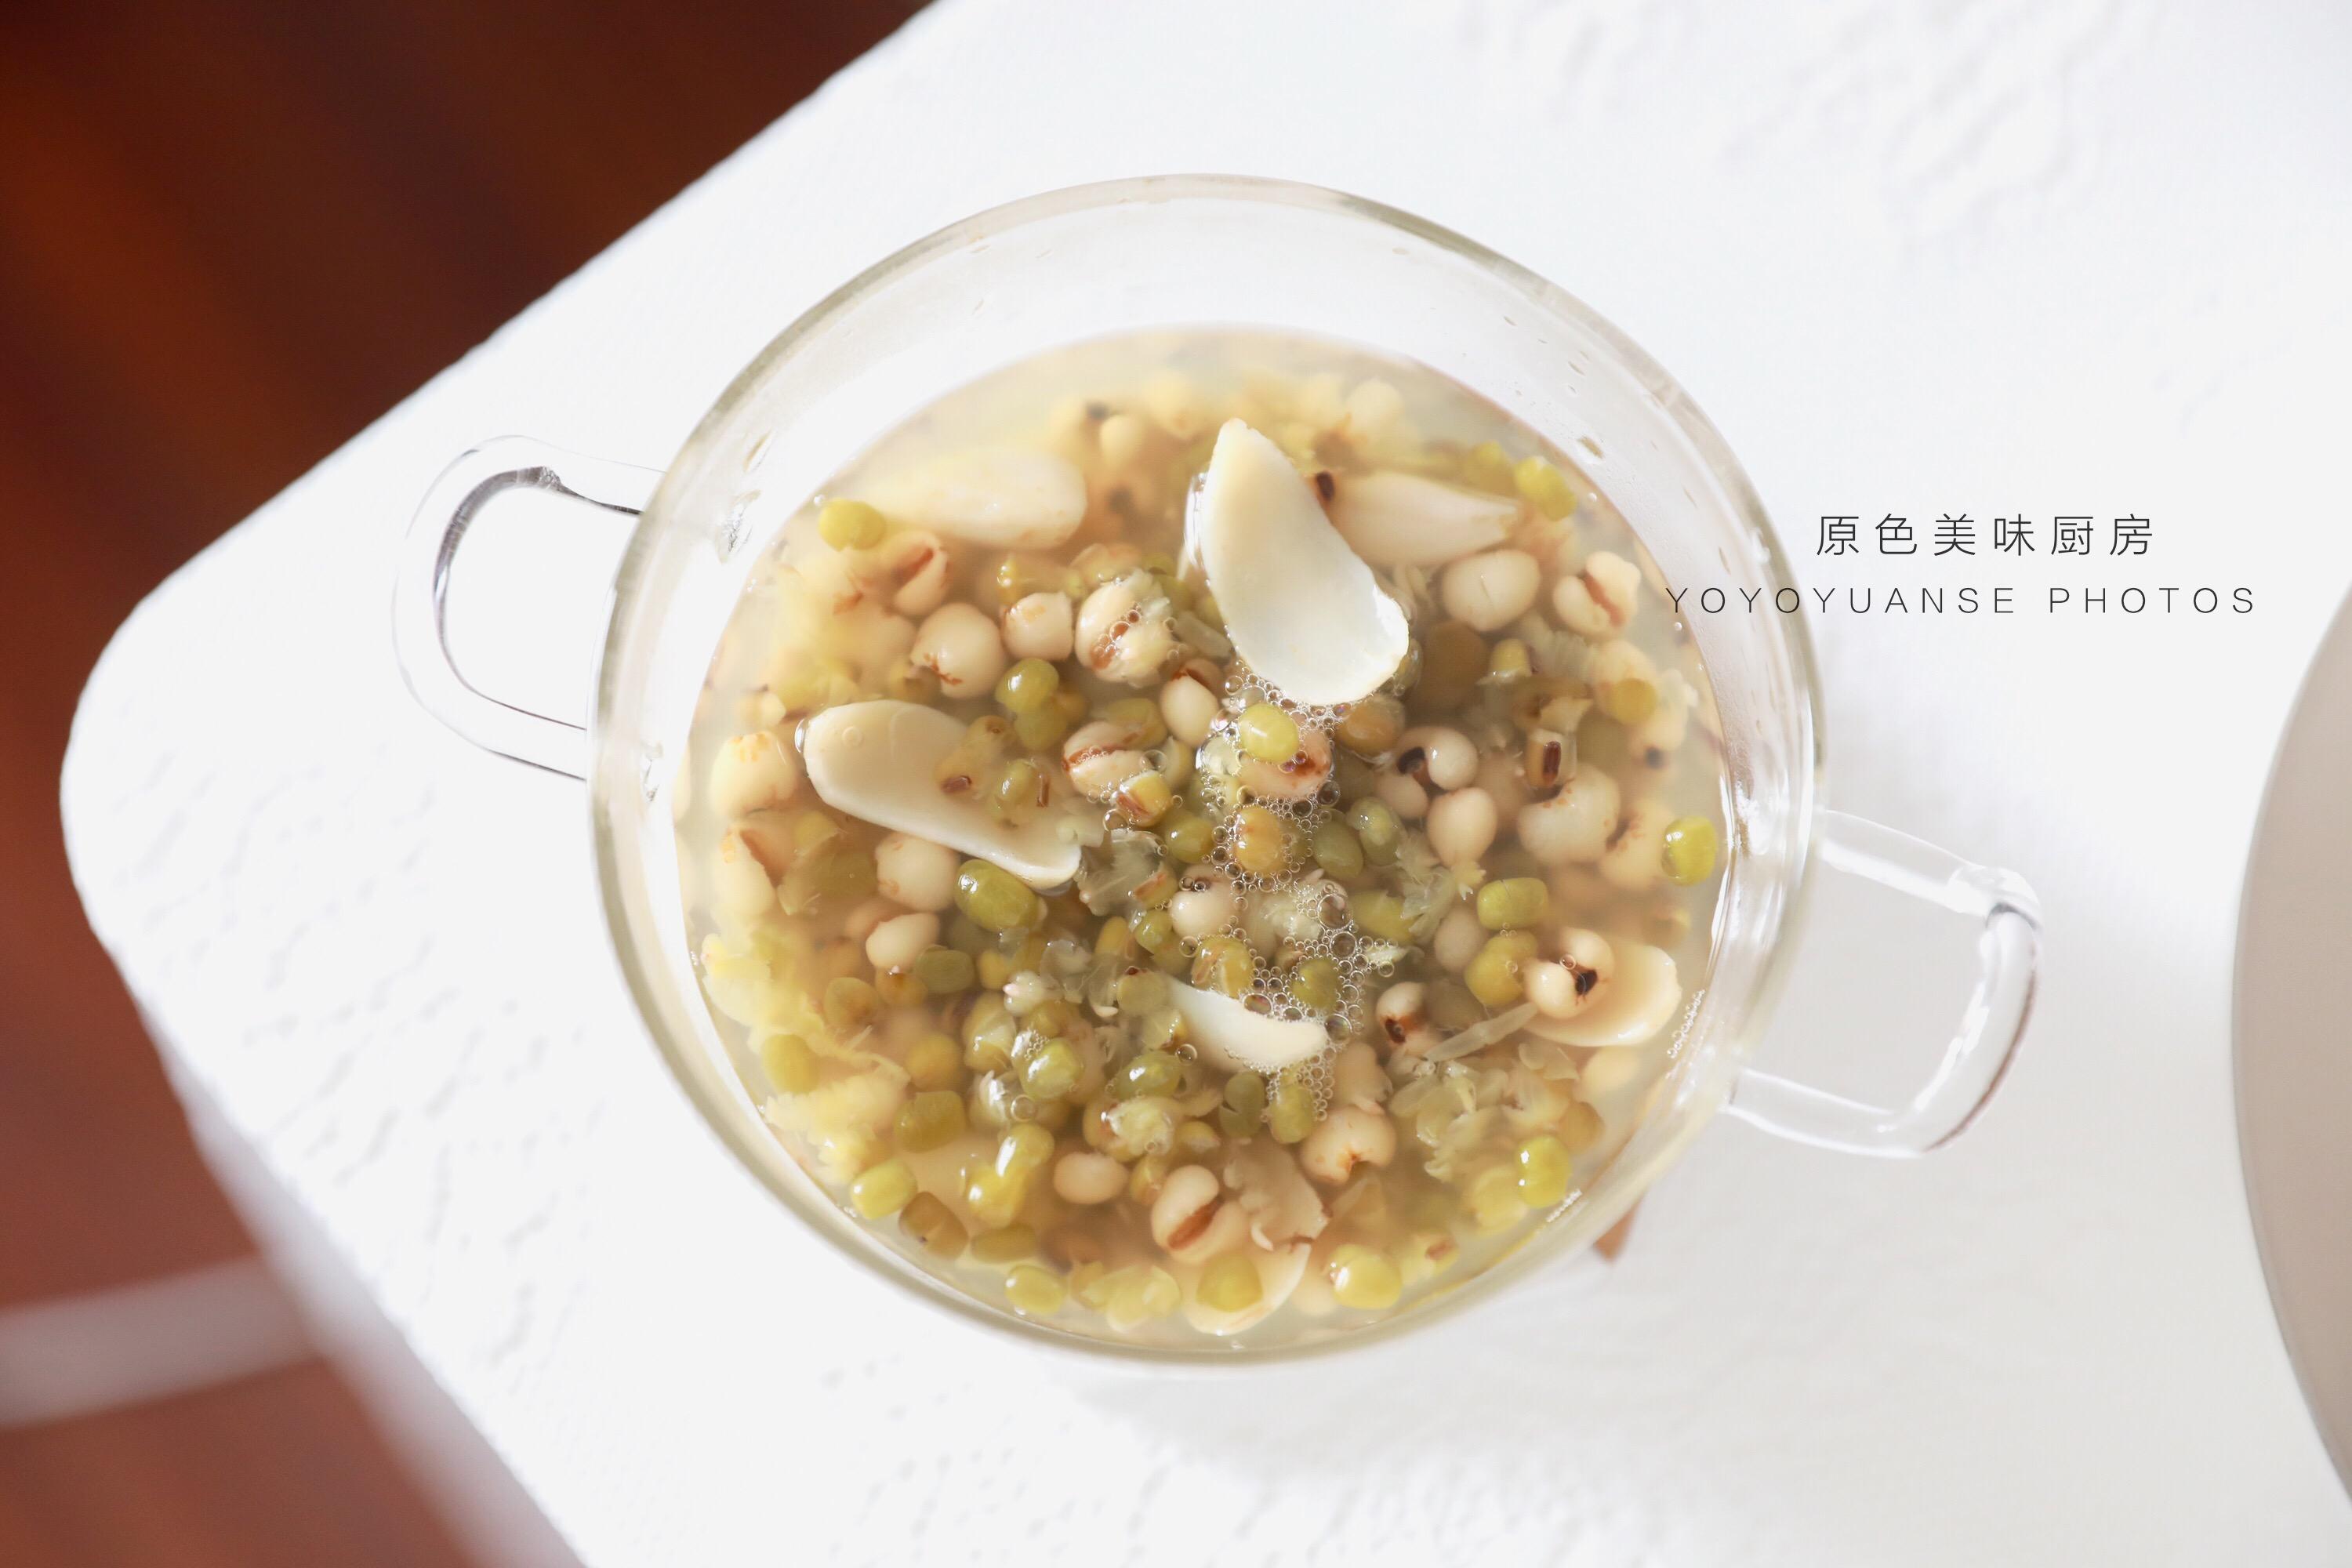 薏米绿豆汤的做法_小敏工坊_小鱼厨房